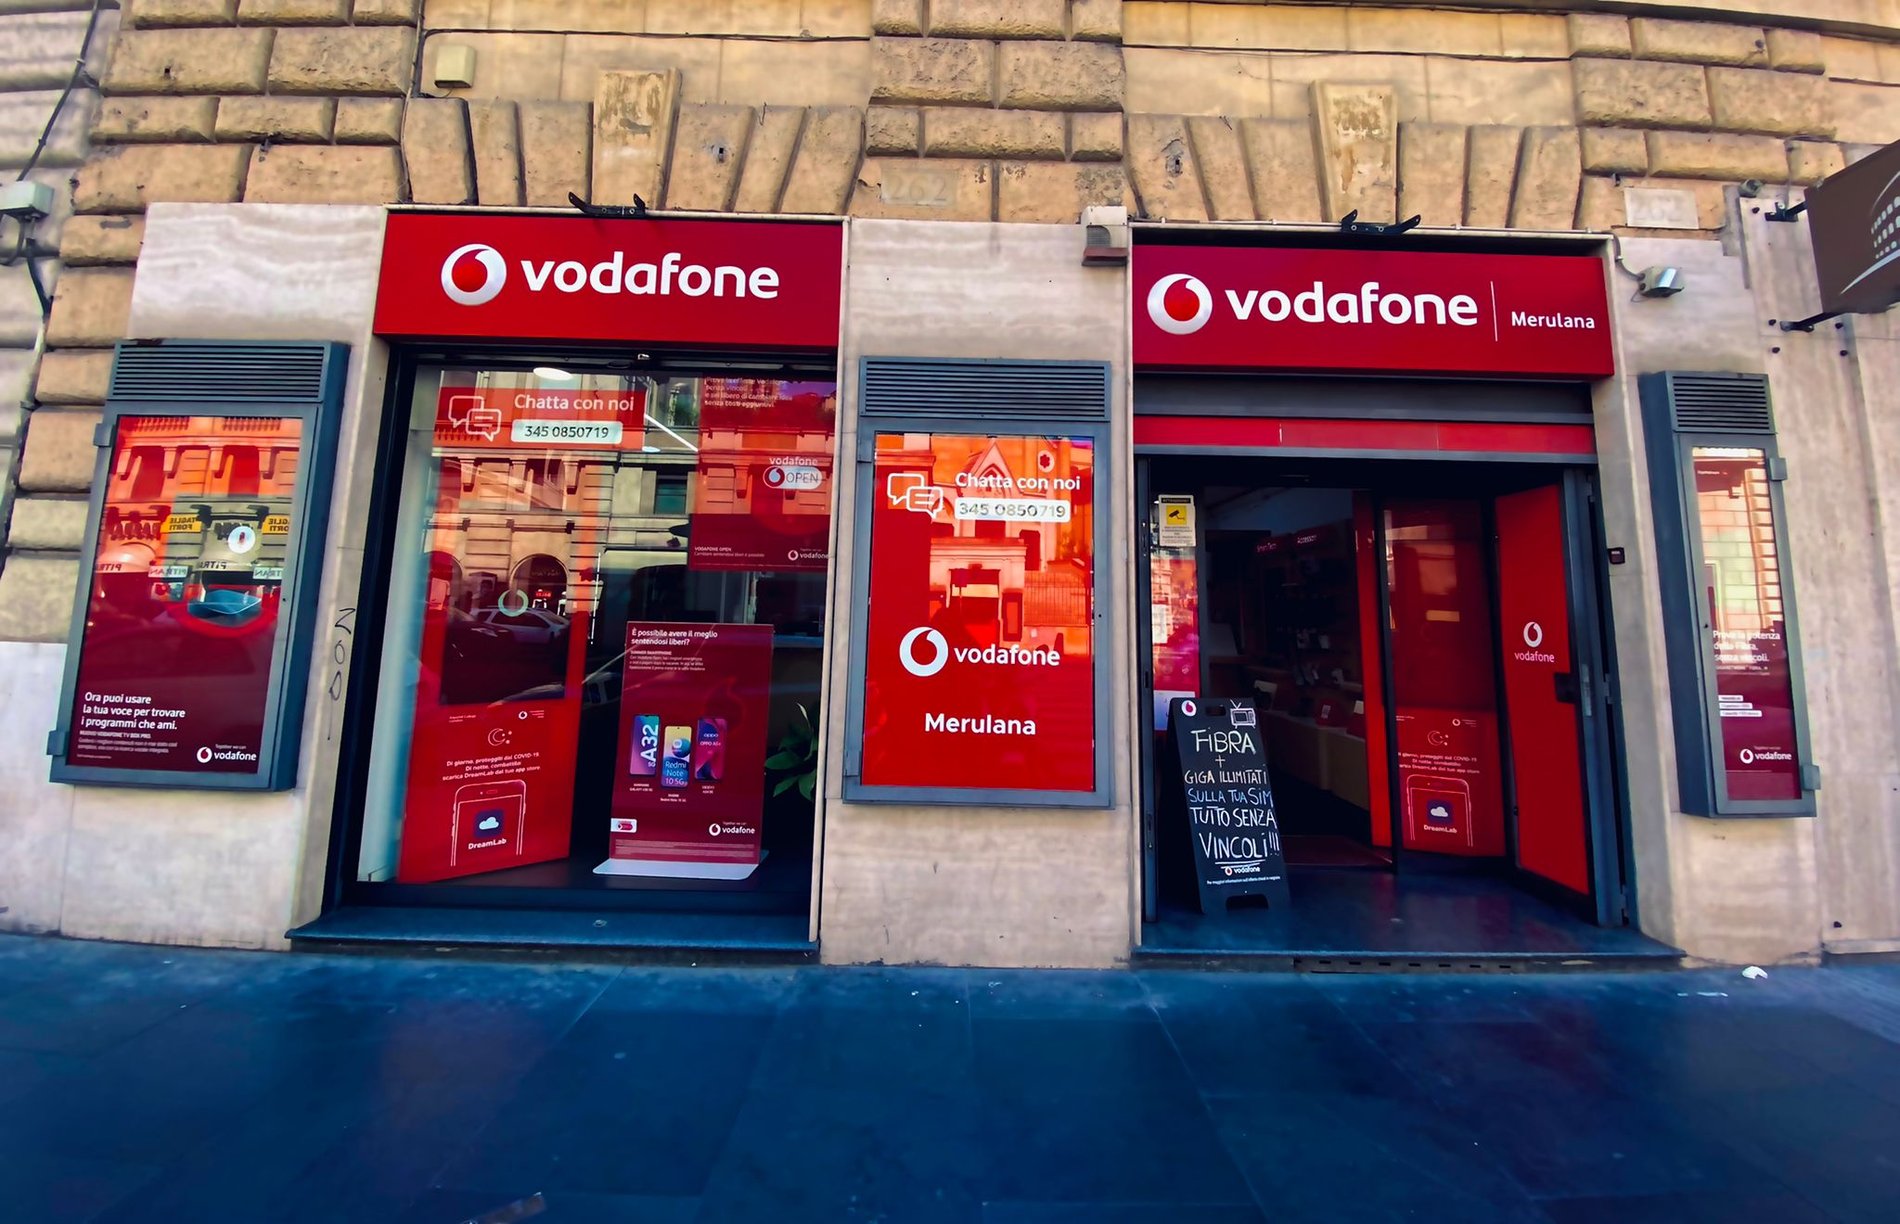 Vieni a trovarci nel nostro store Vodafone di via Merulana 262. Ti aspettiamo per ogni tuo dubbio o esigenza.